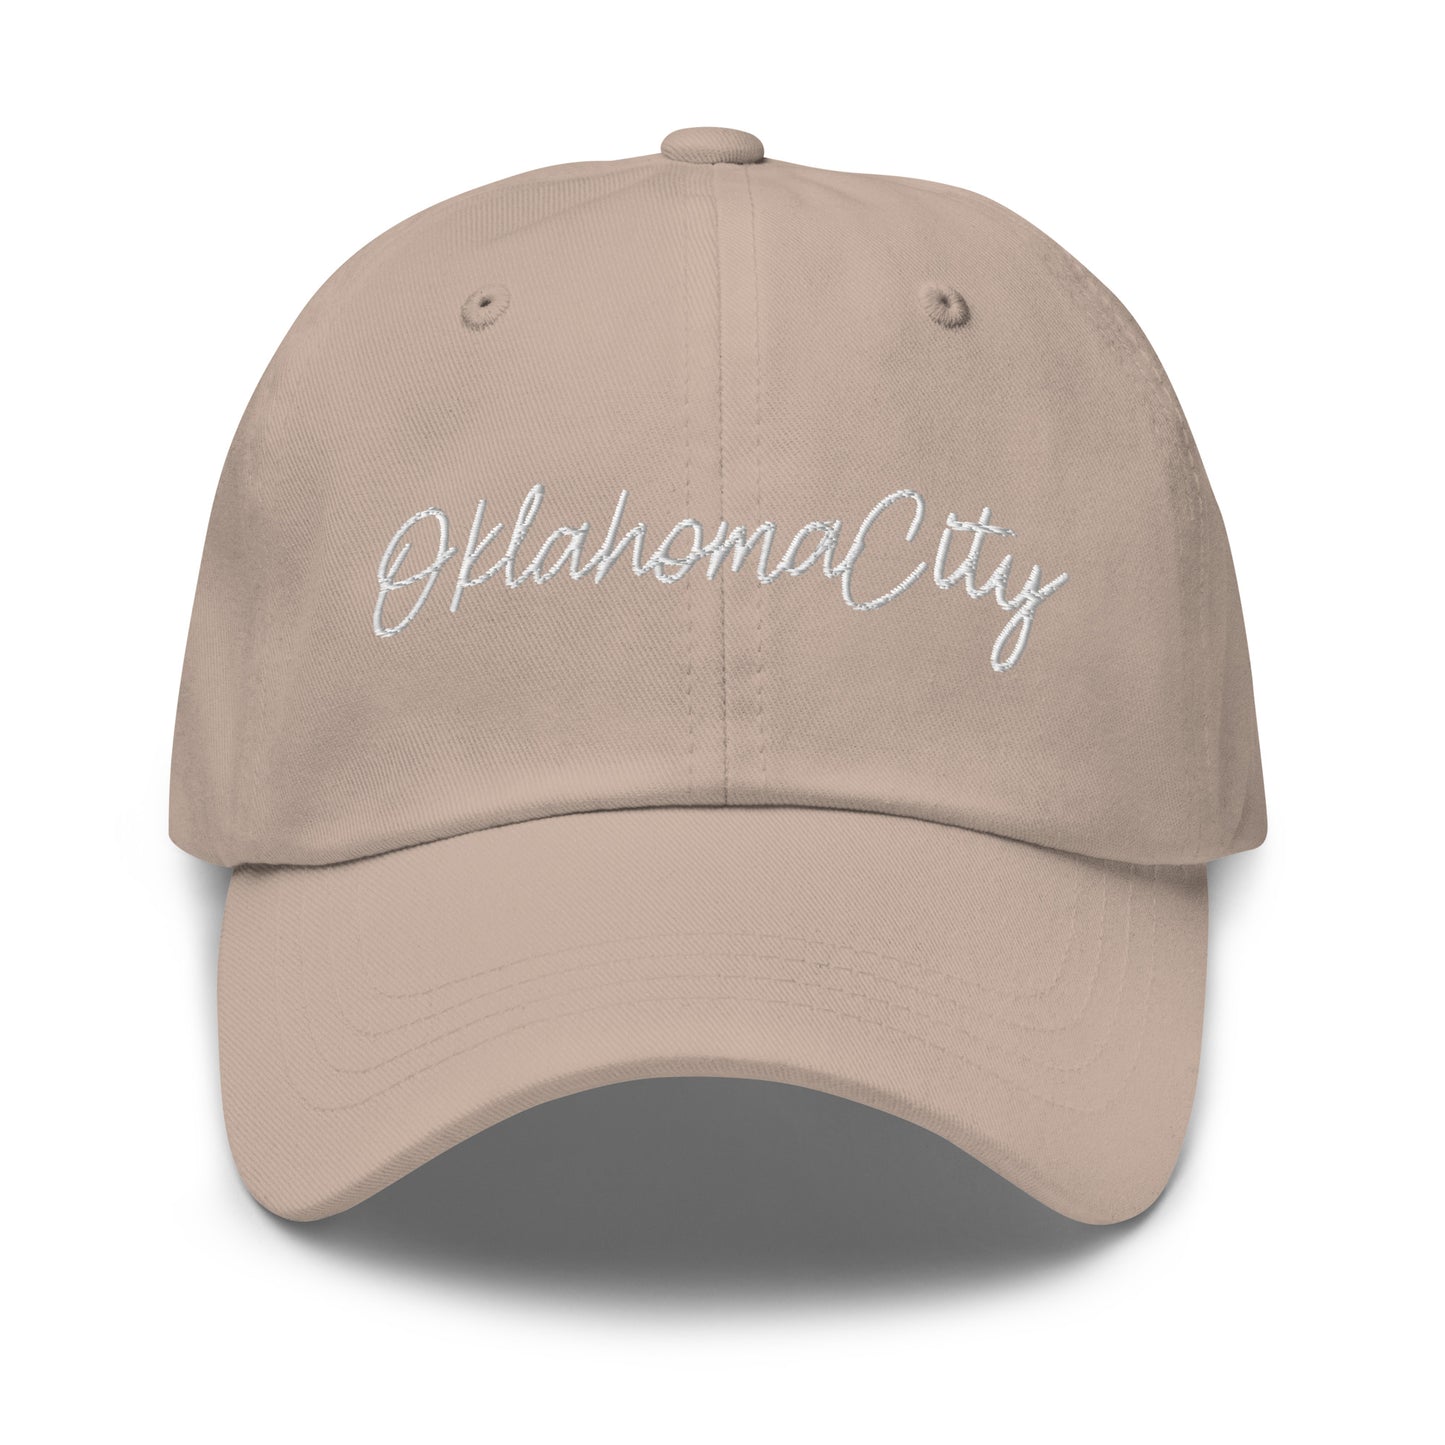 Oklahoma City Retro Script Dad Hat